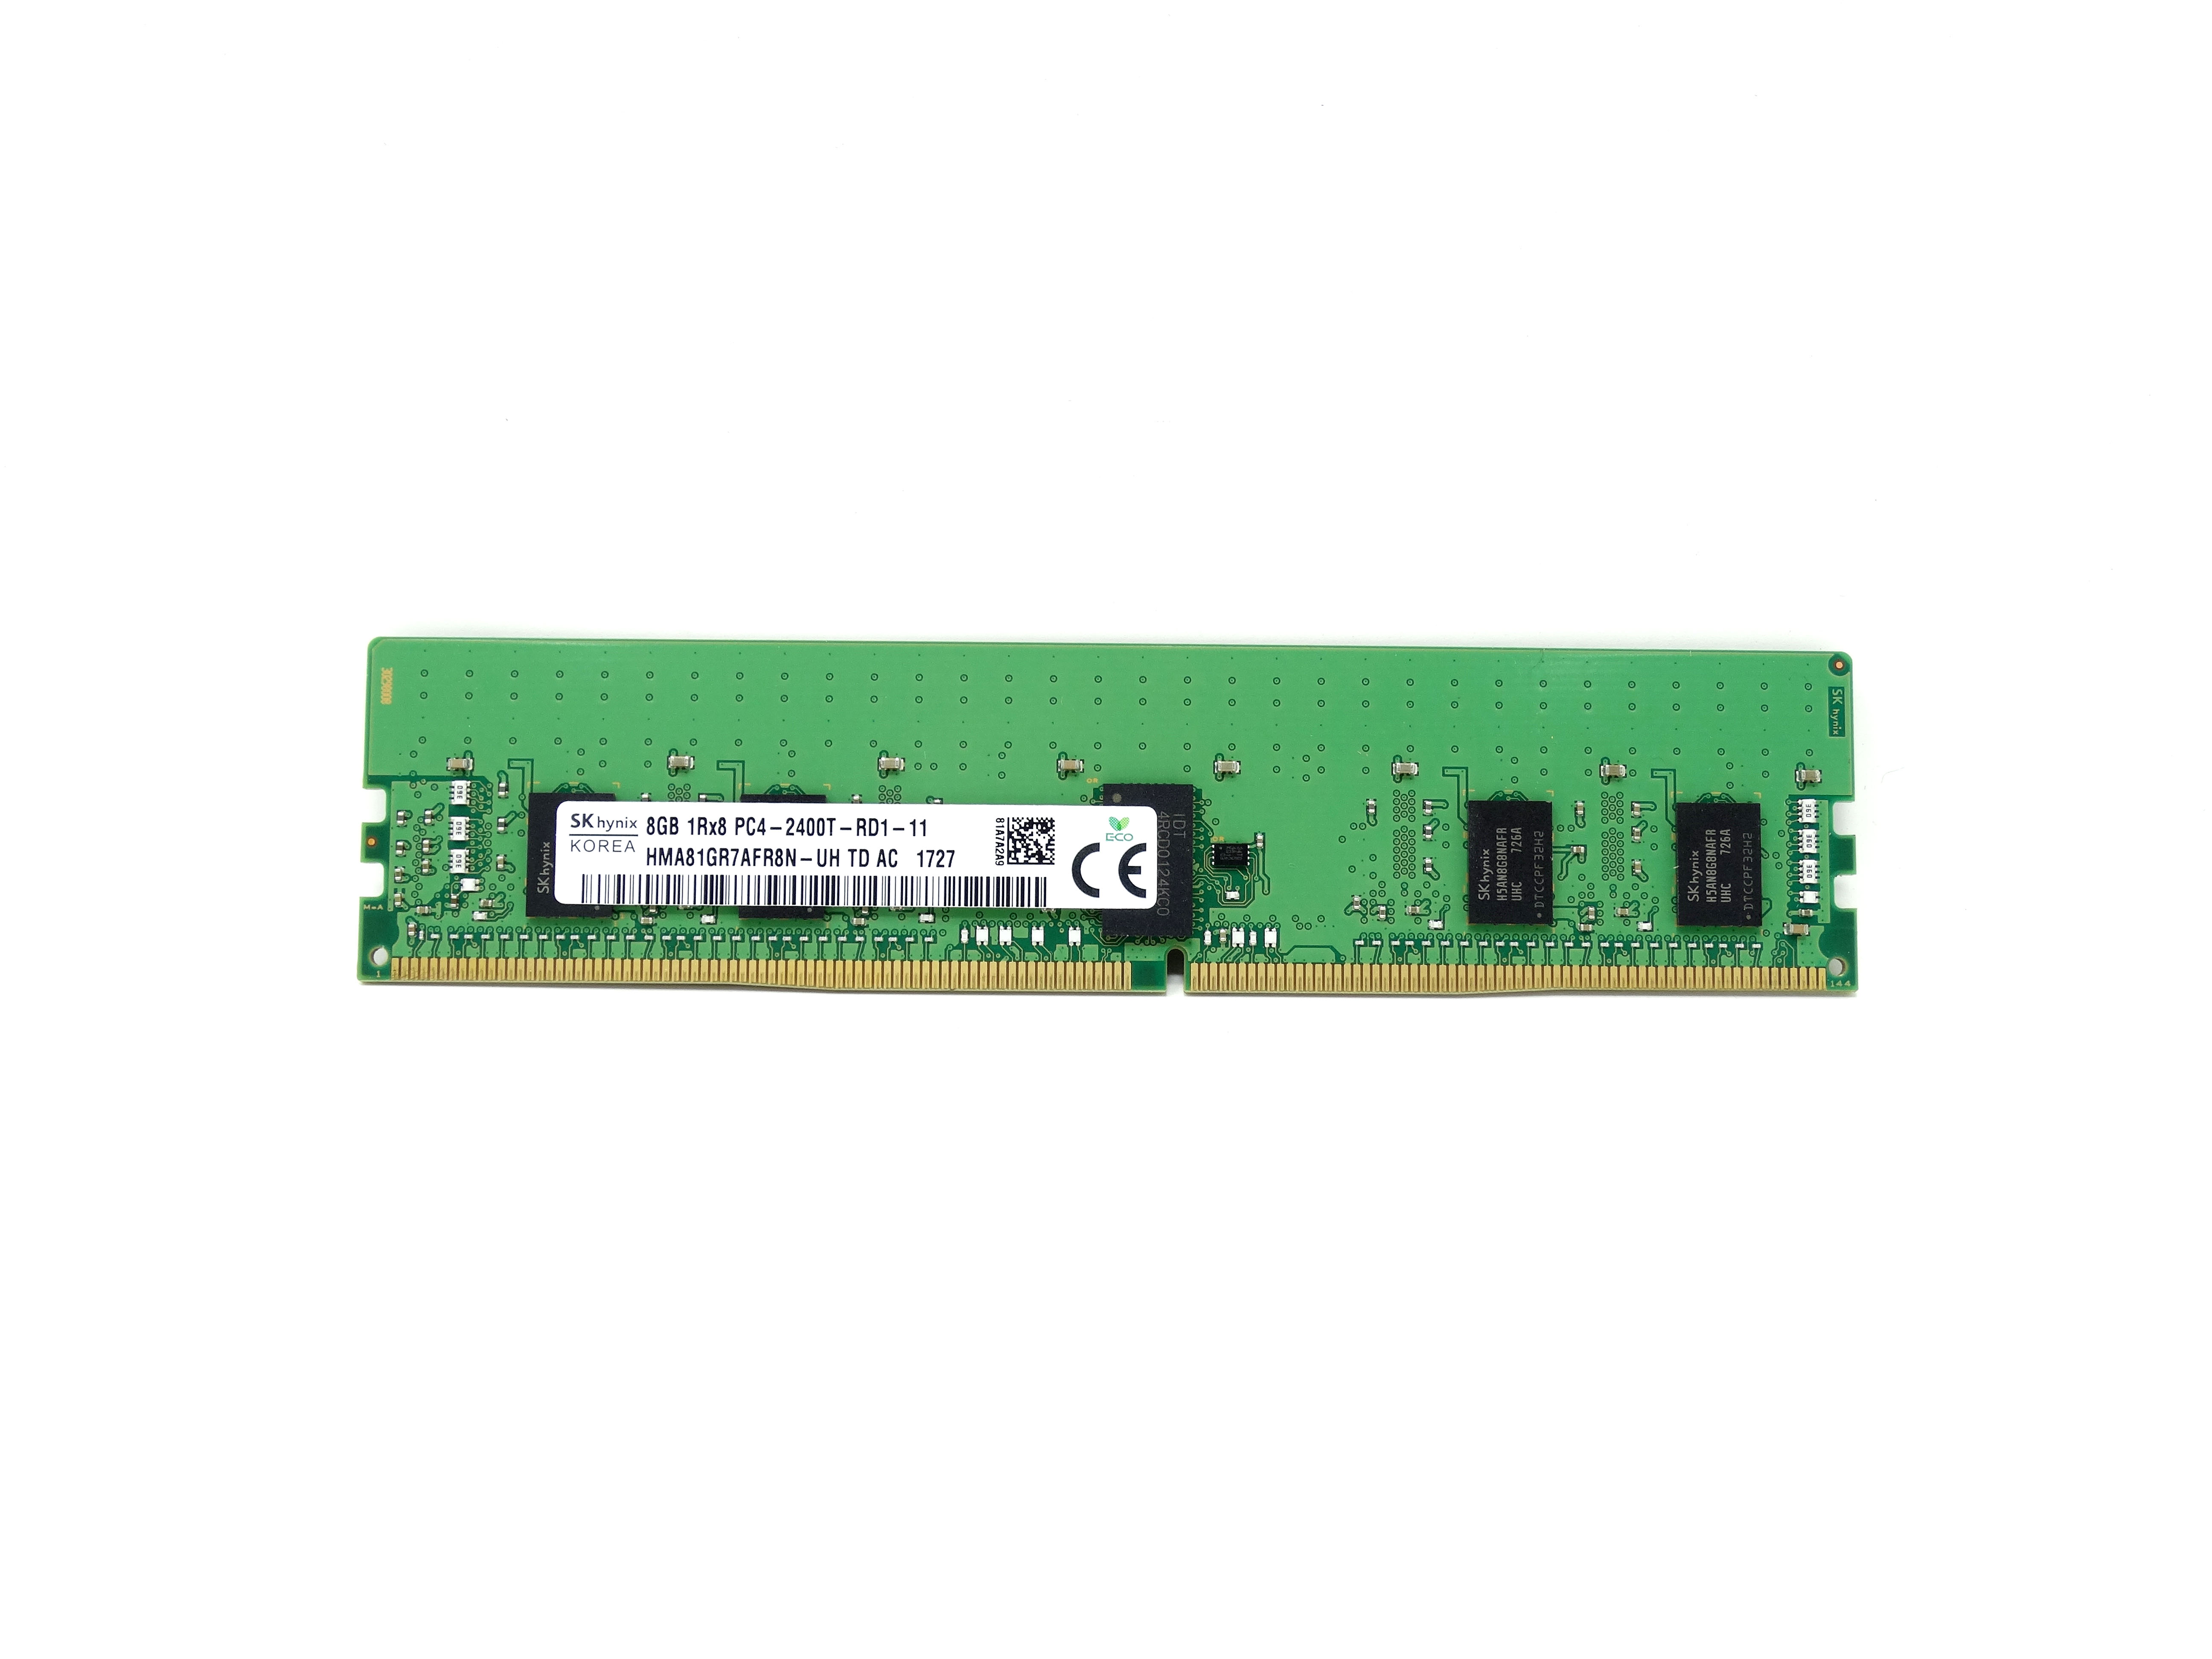 Hynix 8GB 1RX8 PC4-2400T DDR4 2400MHz ECC REG Server Memory RAM (HMA81GR7AFR8N-UH)